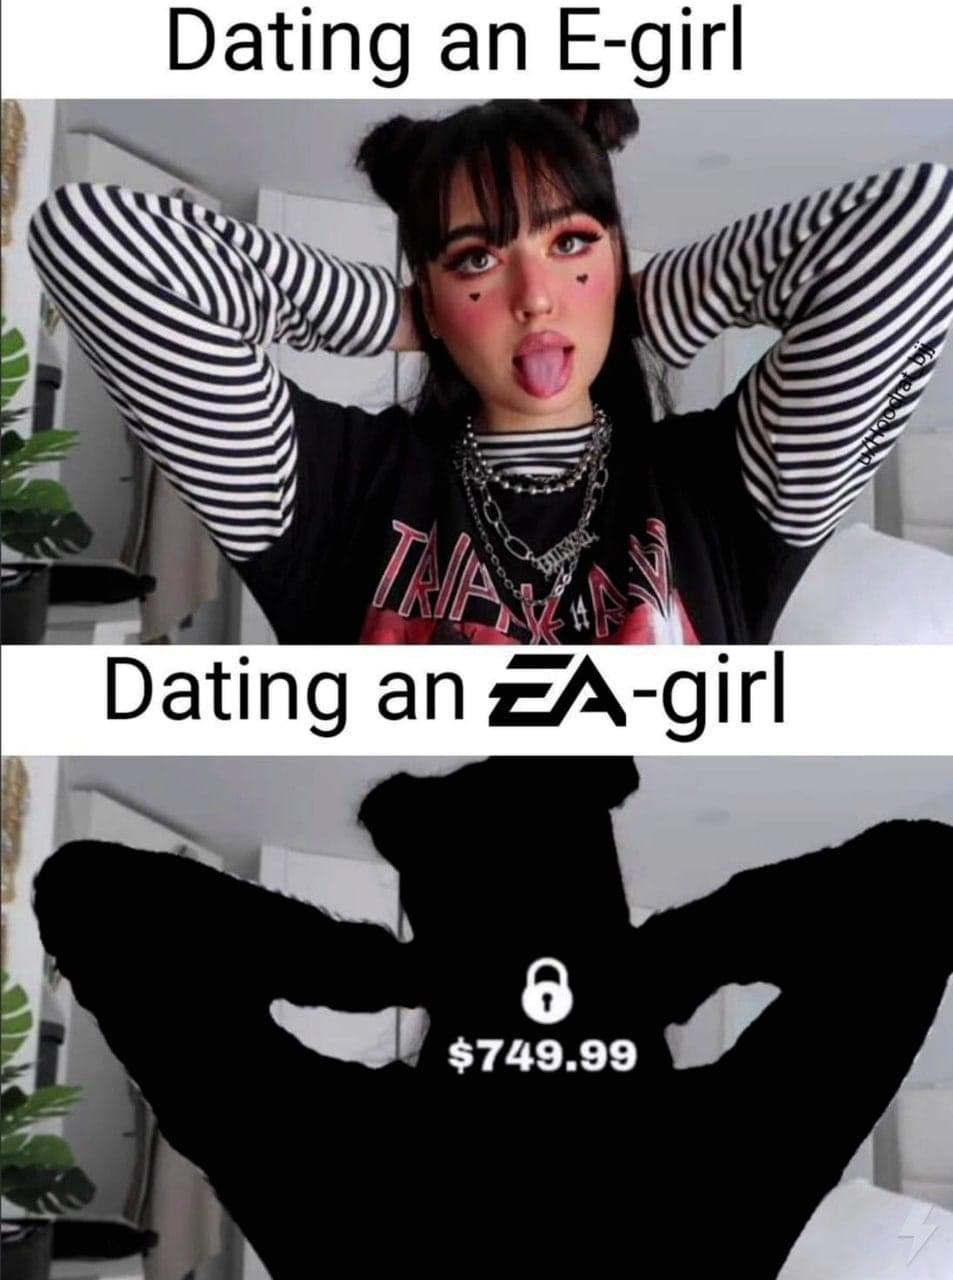 funny gaming memes - ea girl meme - Dating an Egirl Tra Dating an Eagirl O $749.99